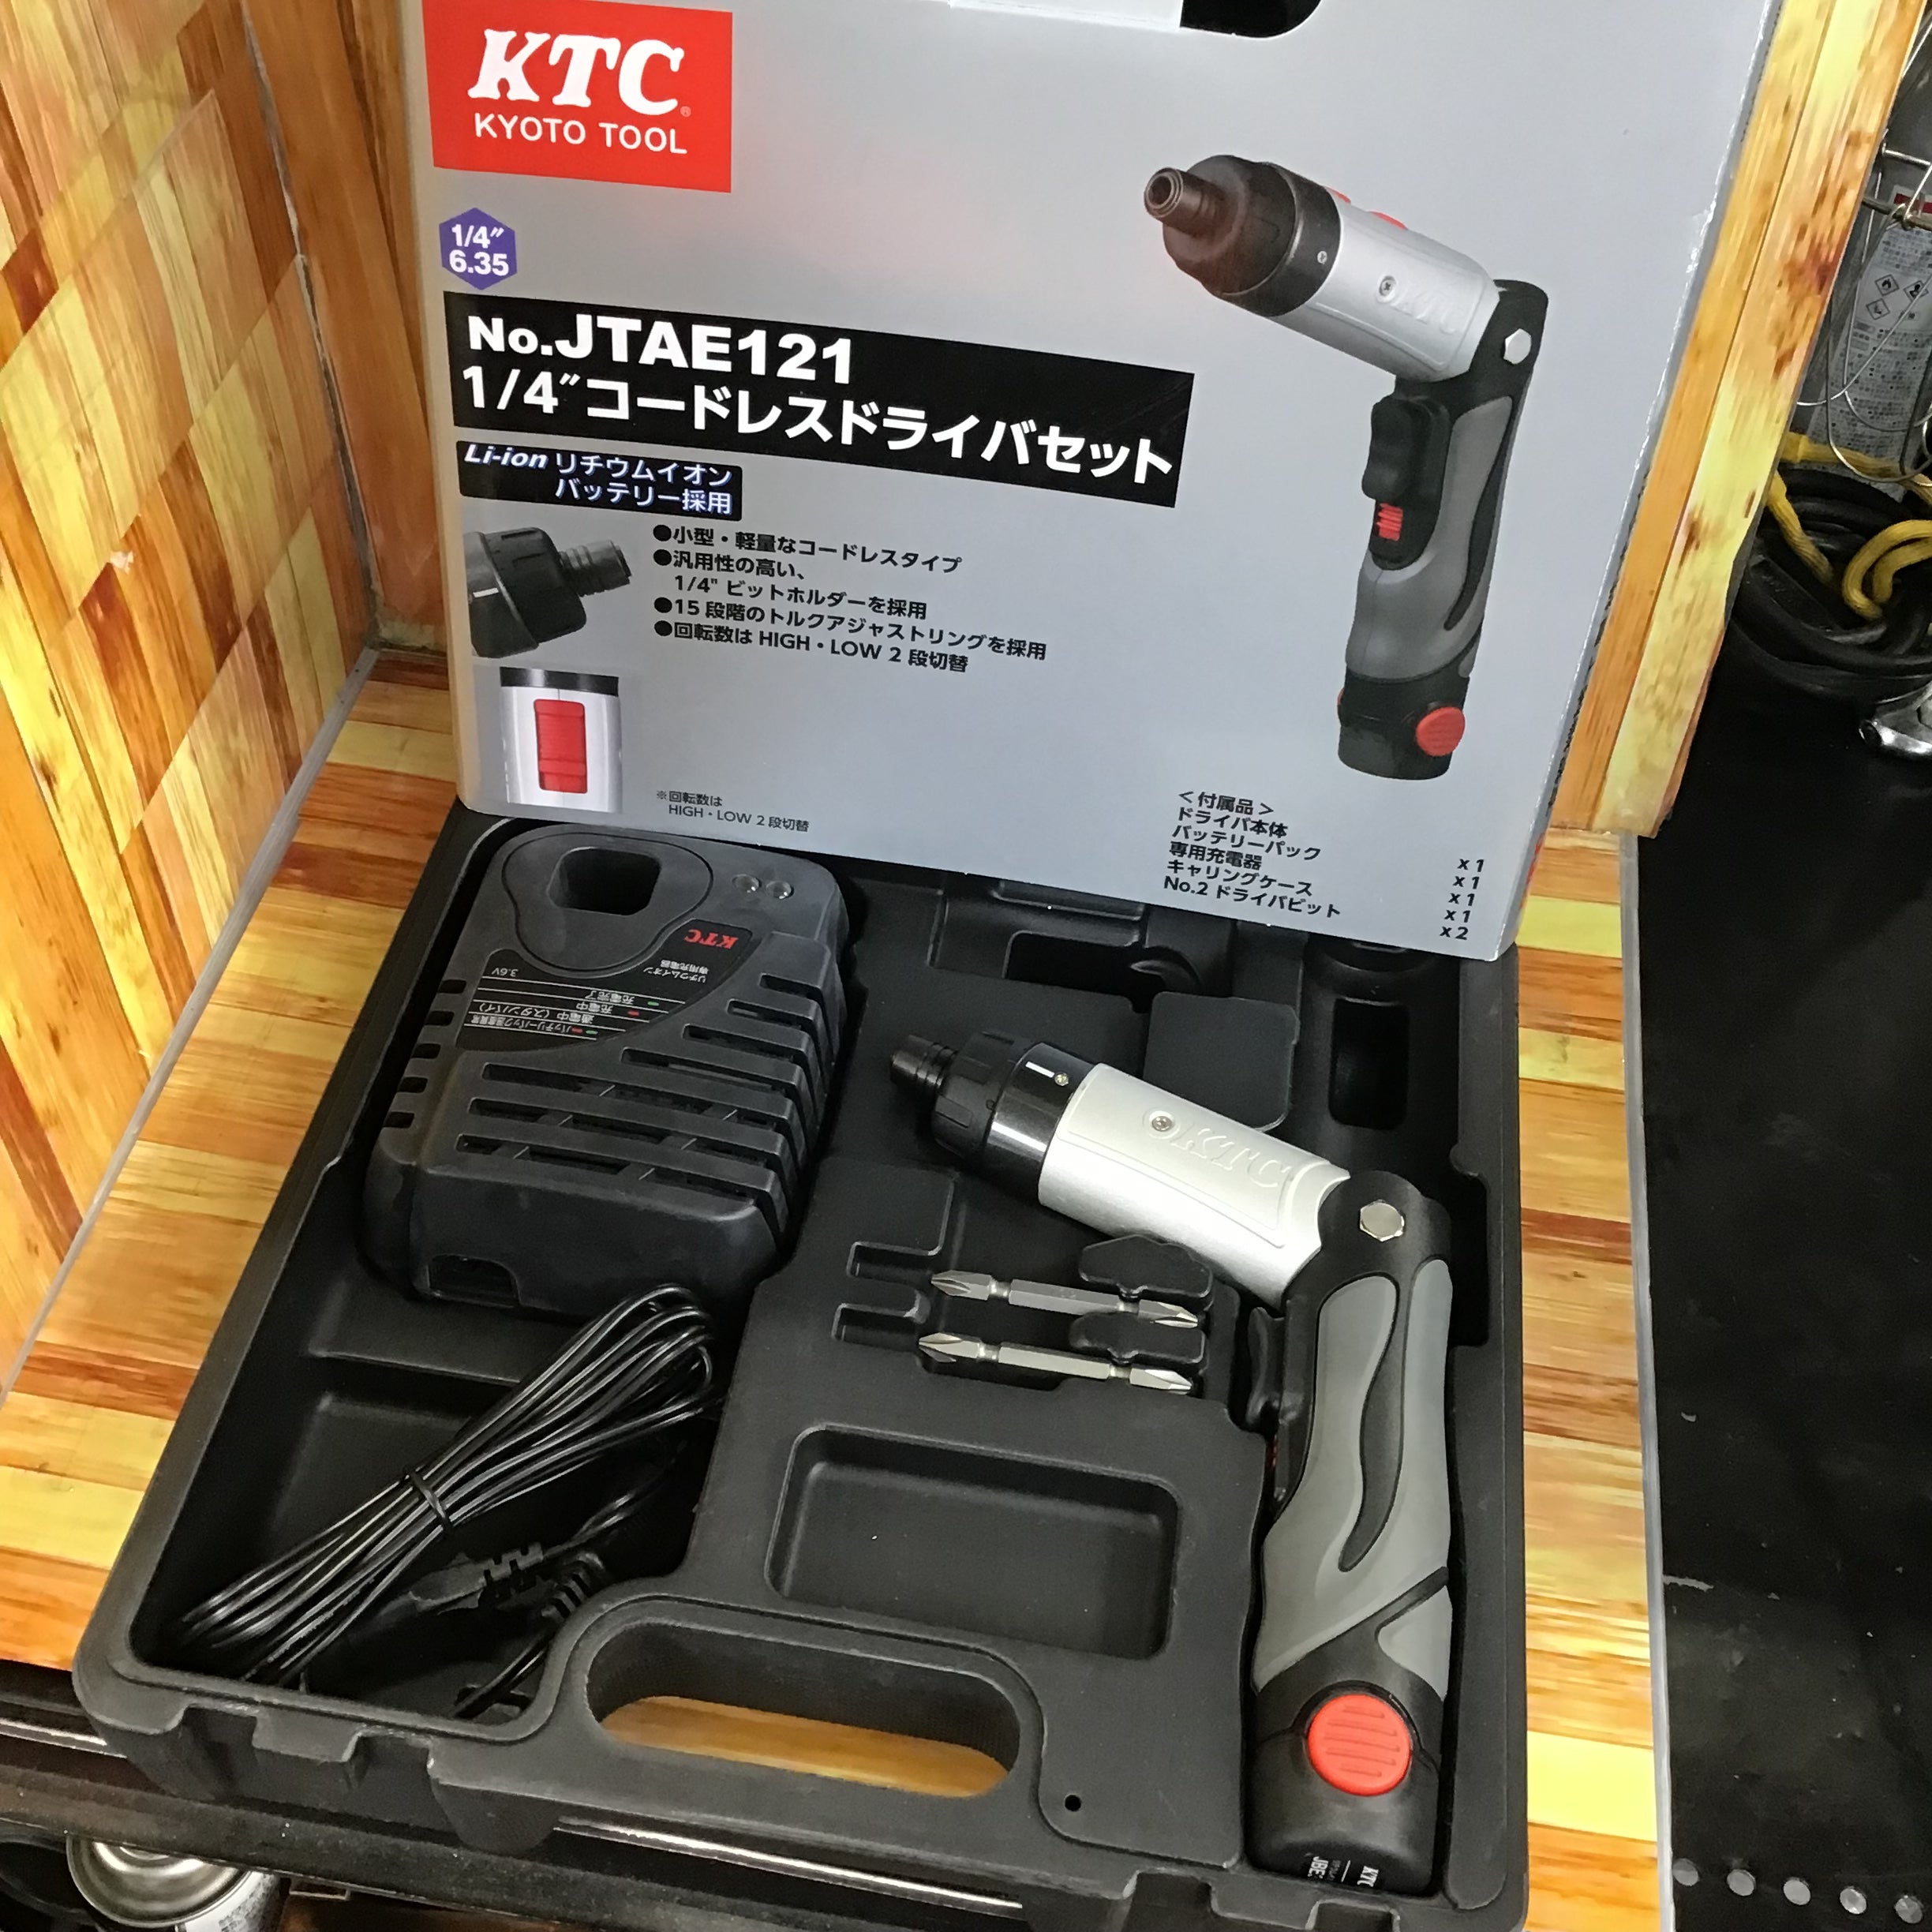 〇KTC(京都機械工具) 1/4sq.コードレスドライバセット JTAE121